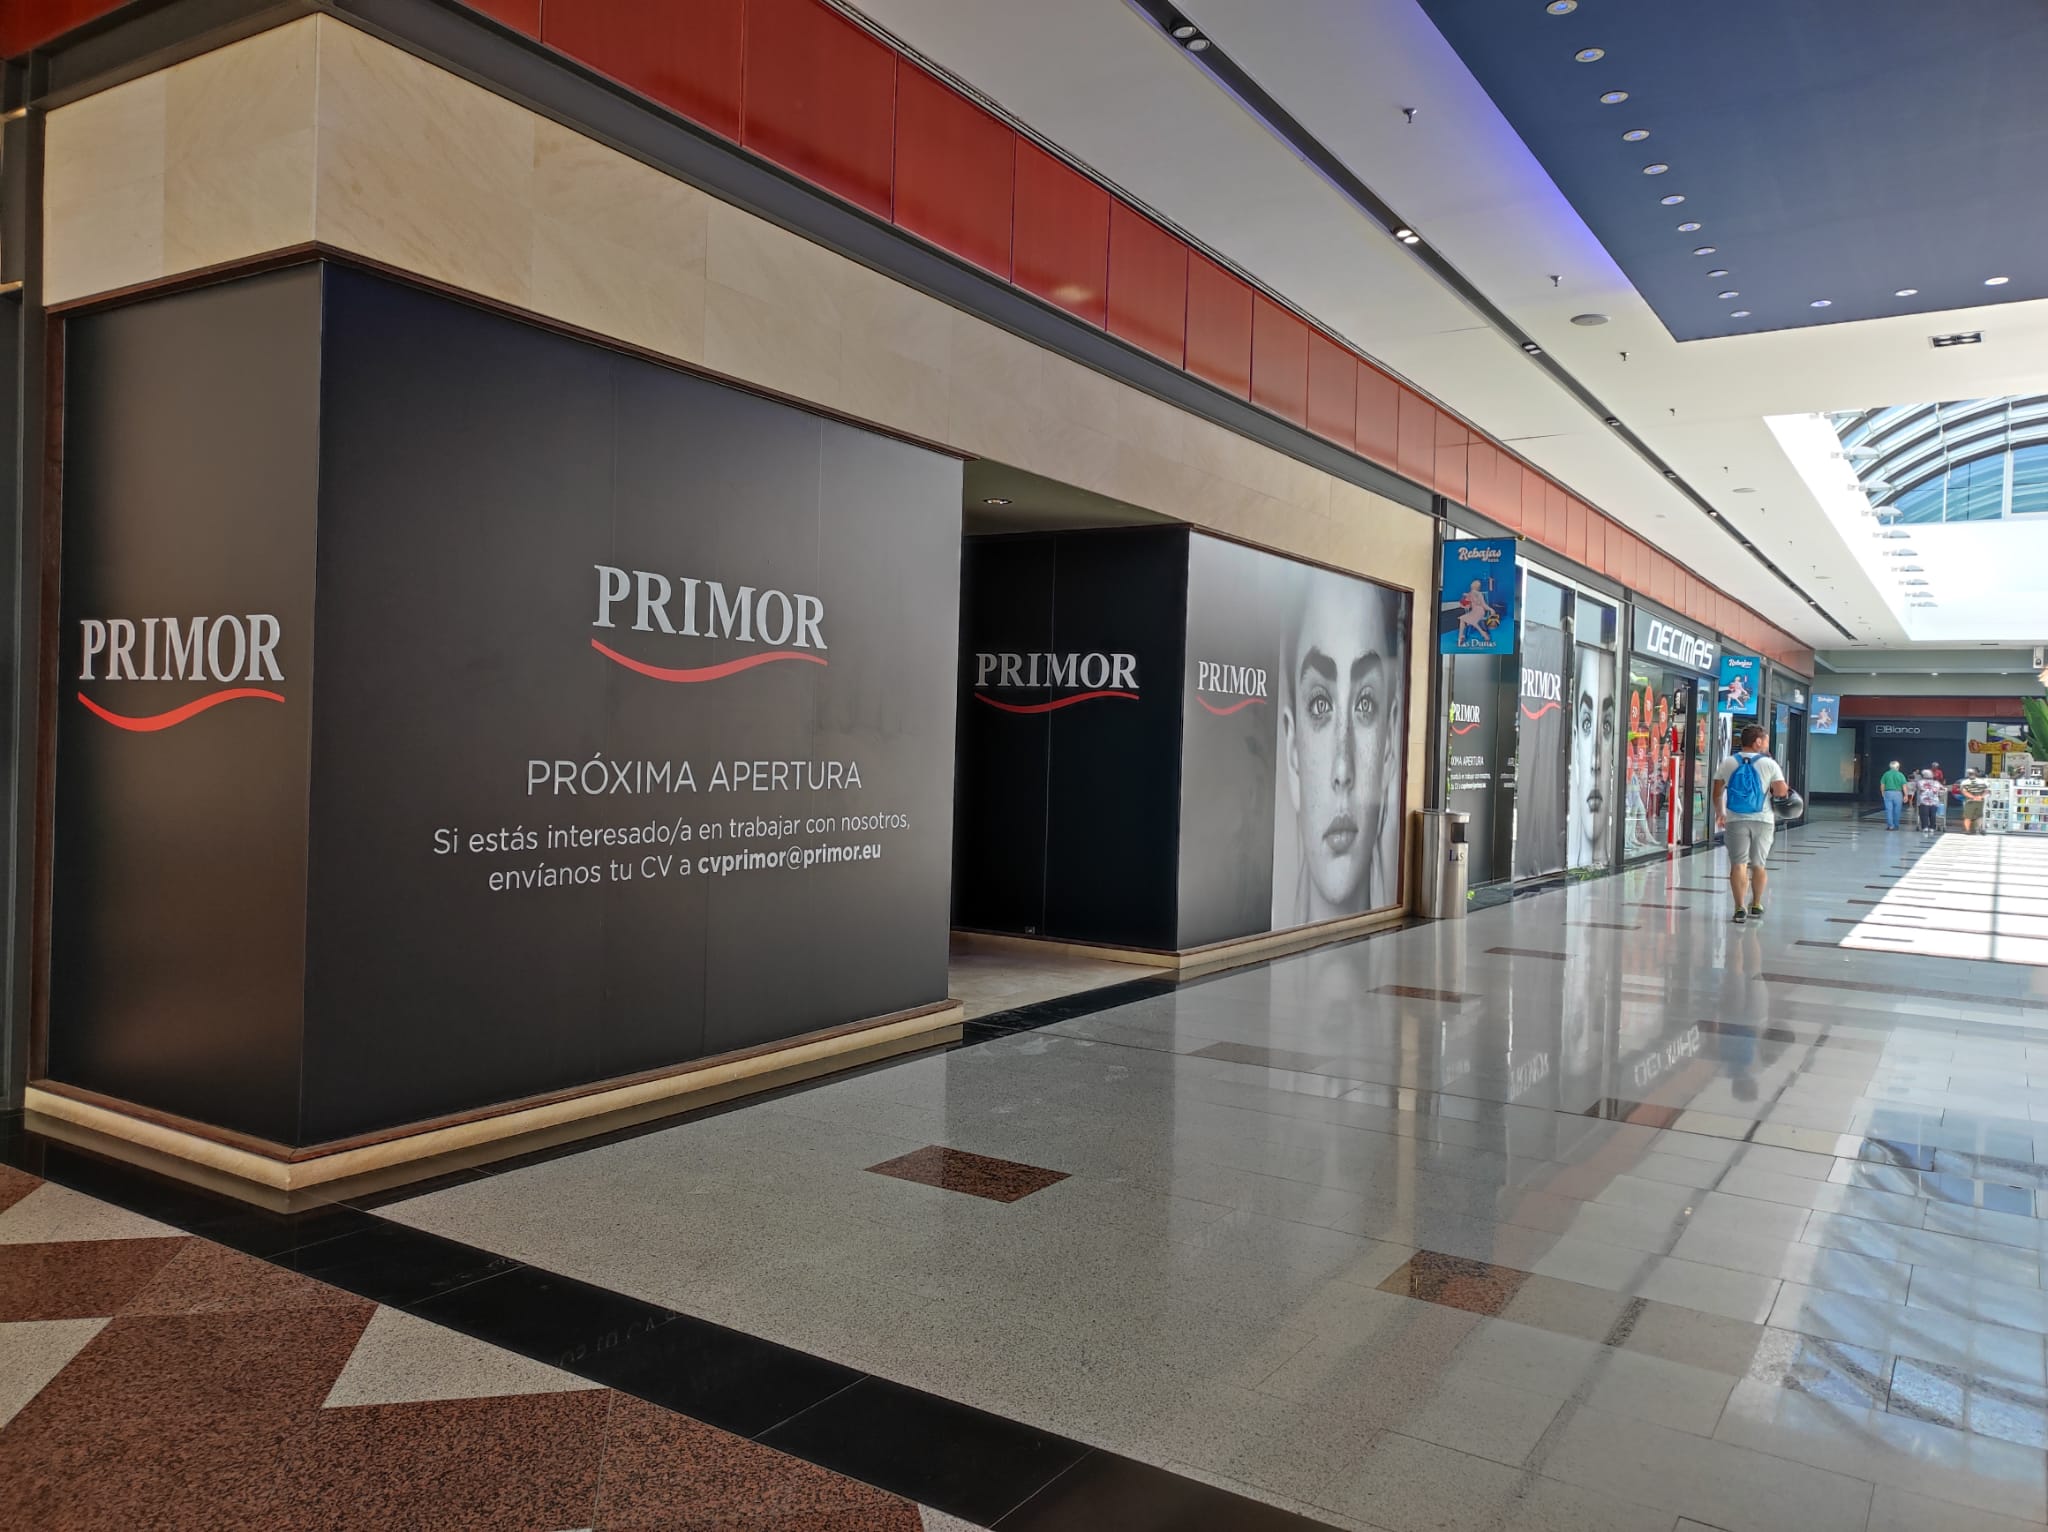 Primor, la perfumería malagueña 'low cost', abrirá un nuevo local El Parque Comercial Las Dunas de Sanlúcar 